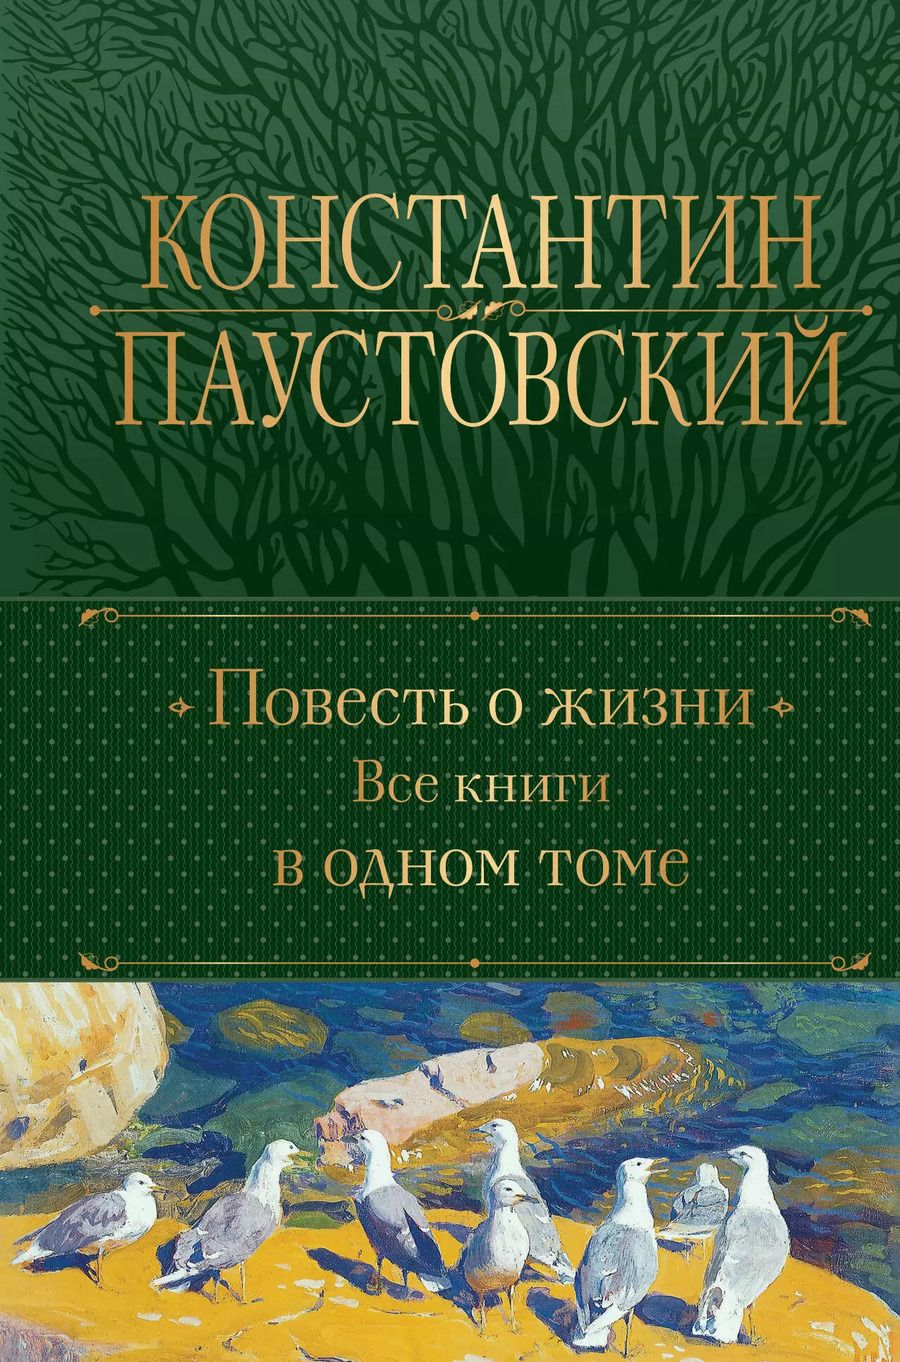 Обложка книги "Константин Паустовский: Повесть о жизни. Все книги в одном томе"